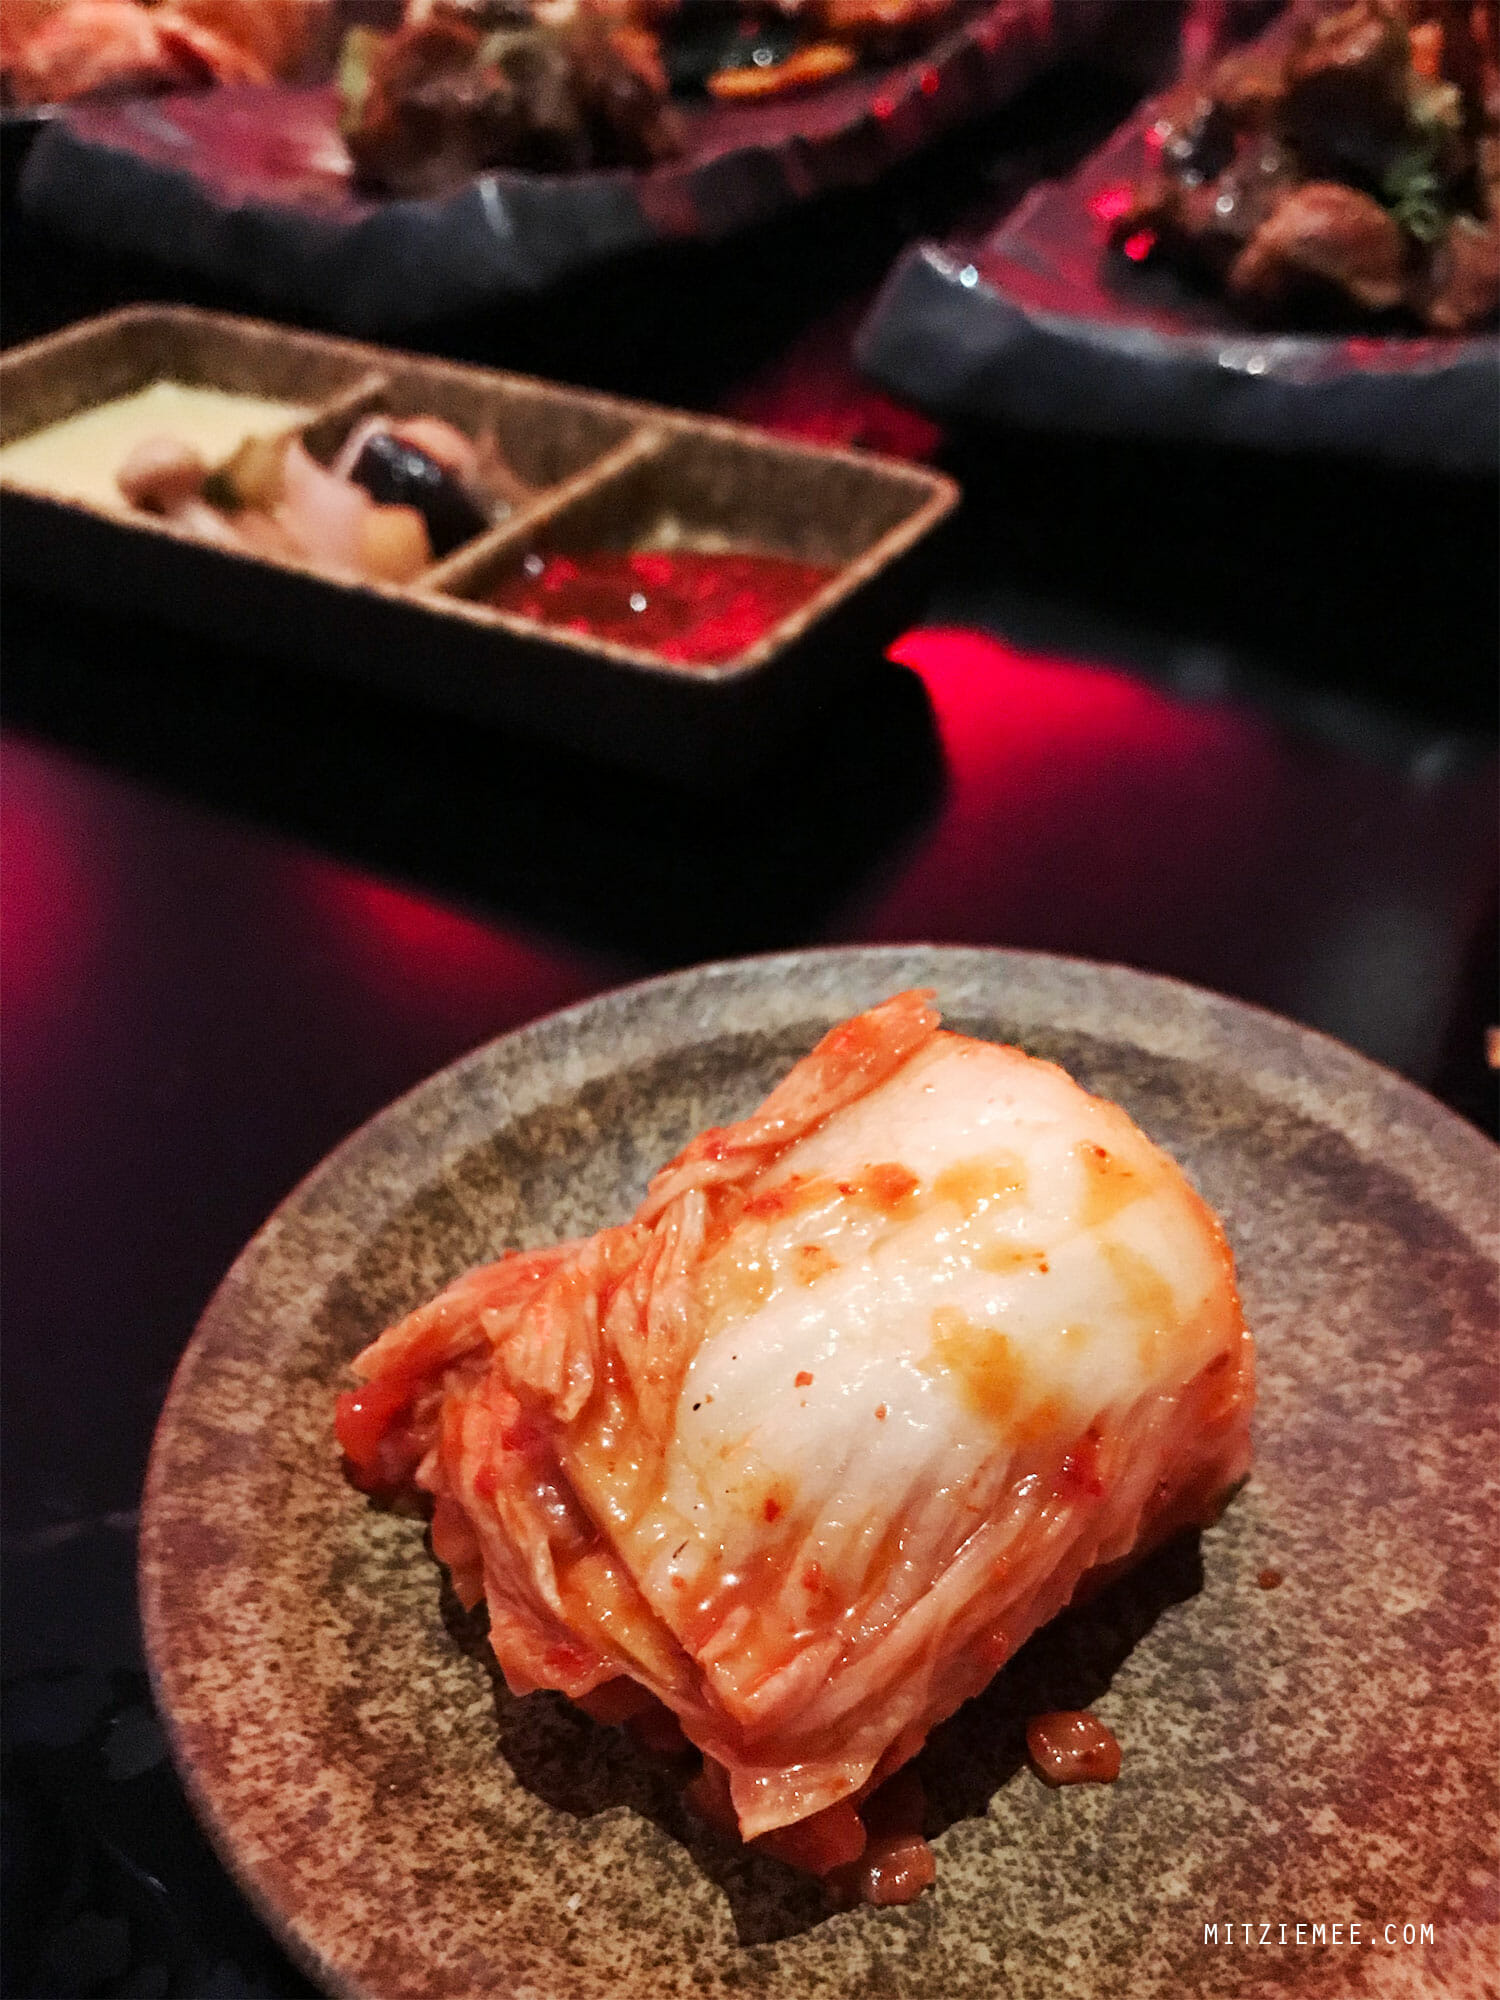 kimchi at Korean BBQ Brunch at Namu, Dubai